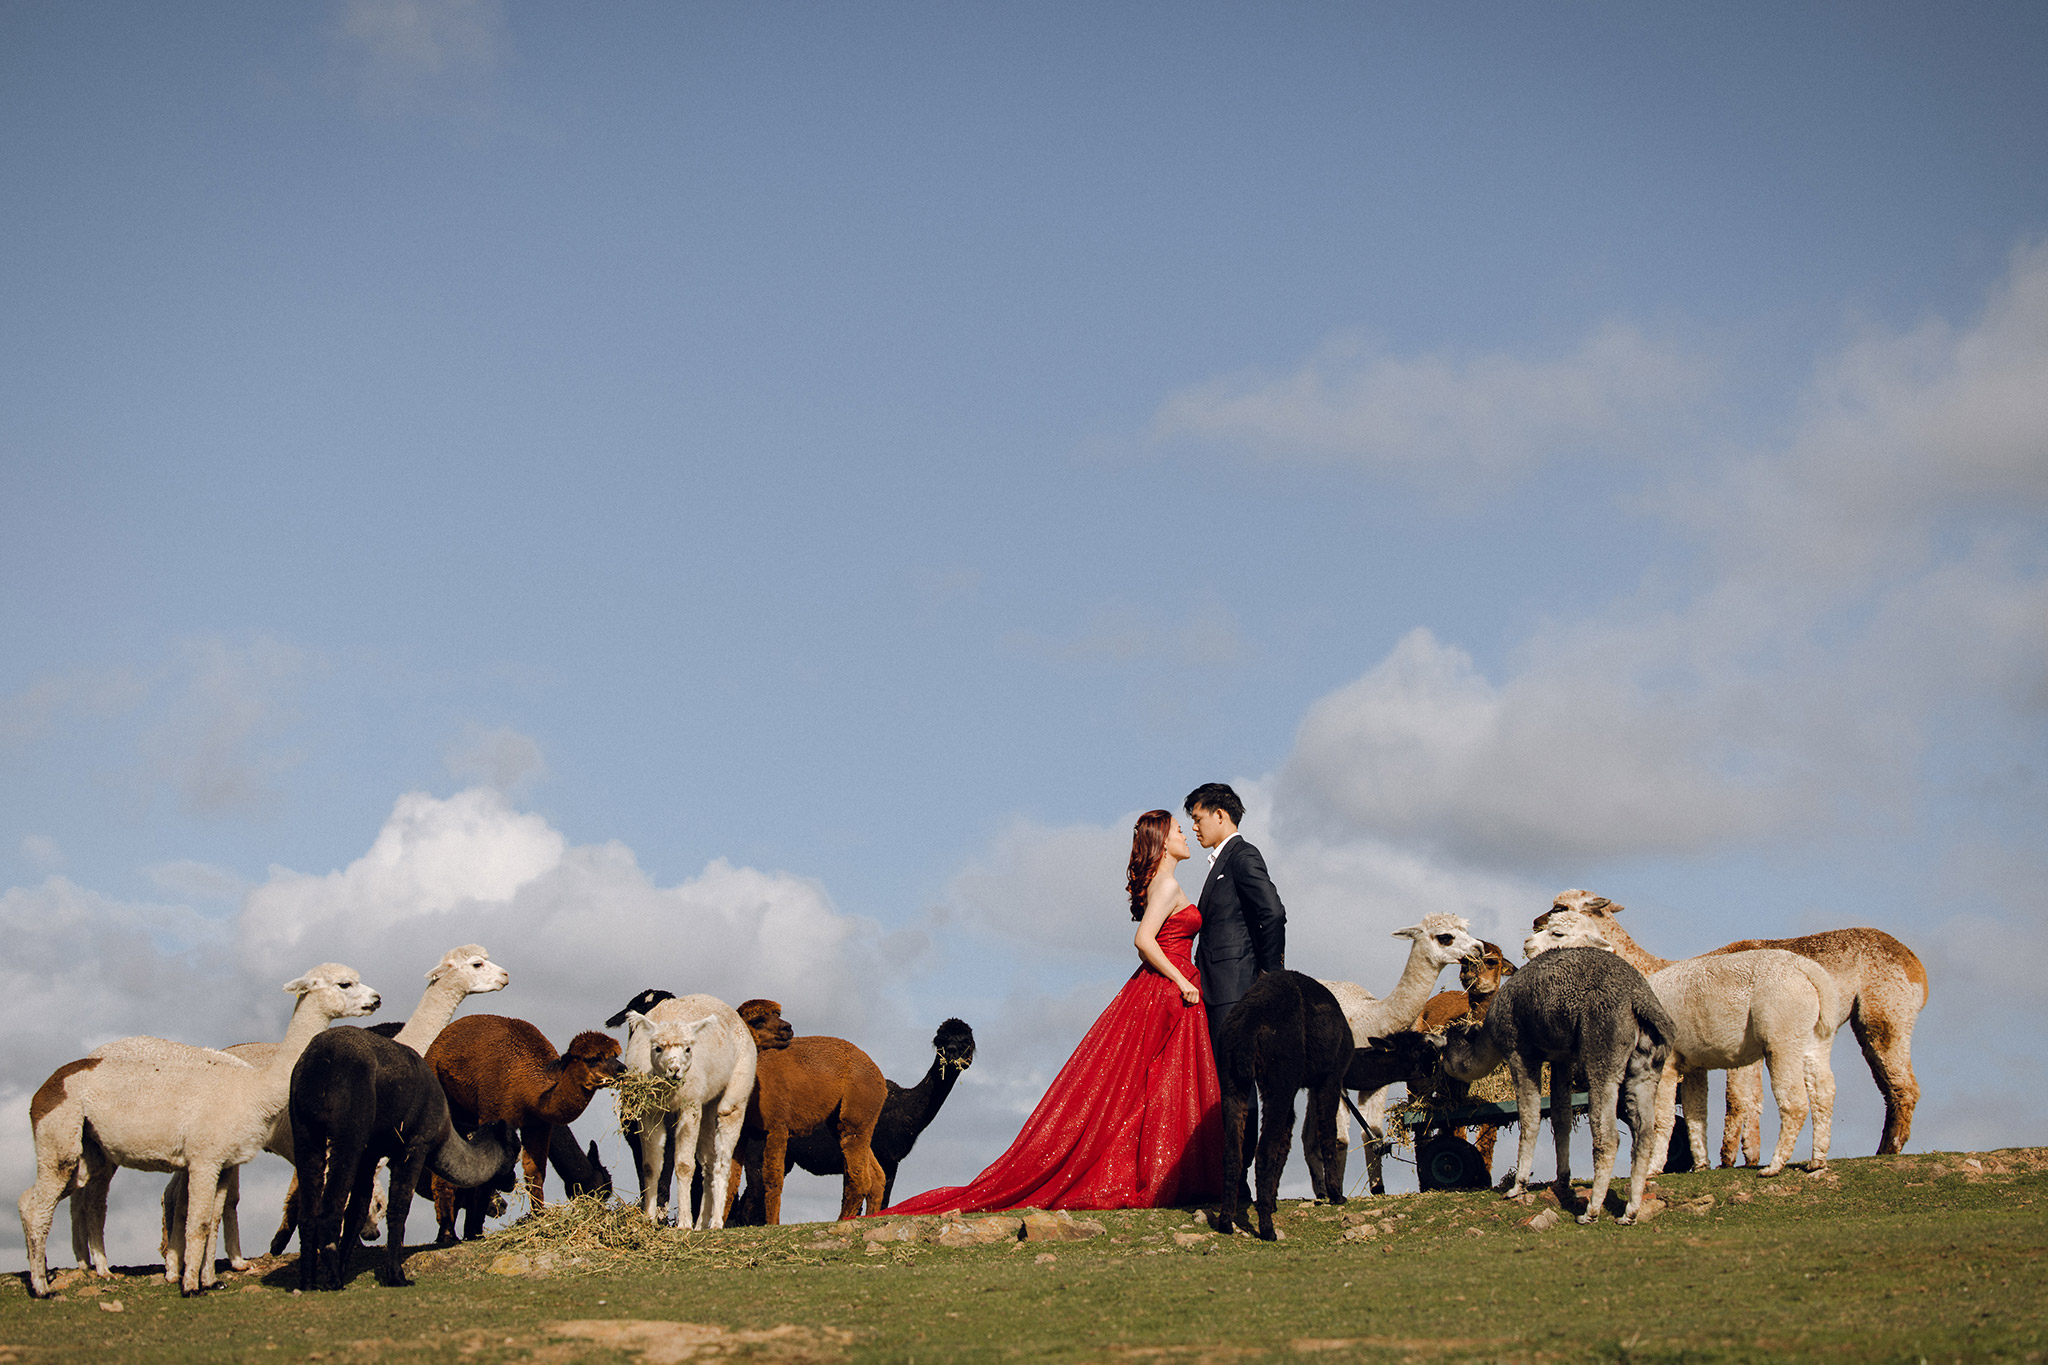 Melbourne Pre-Wedding Photoshoot at Alpaca Farm, Fitzroy Gardens & Brighton Beach by Freddie on OneThreeOneFour 1